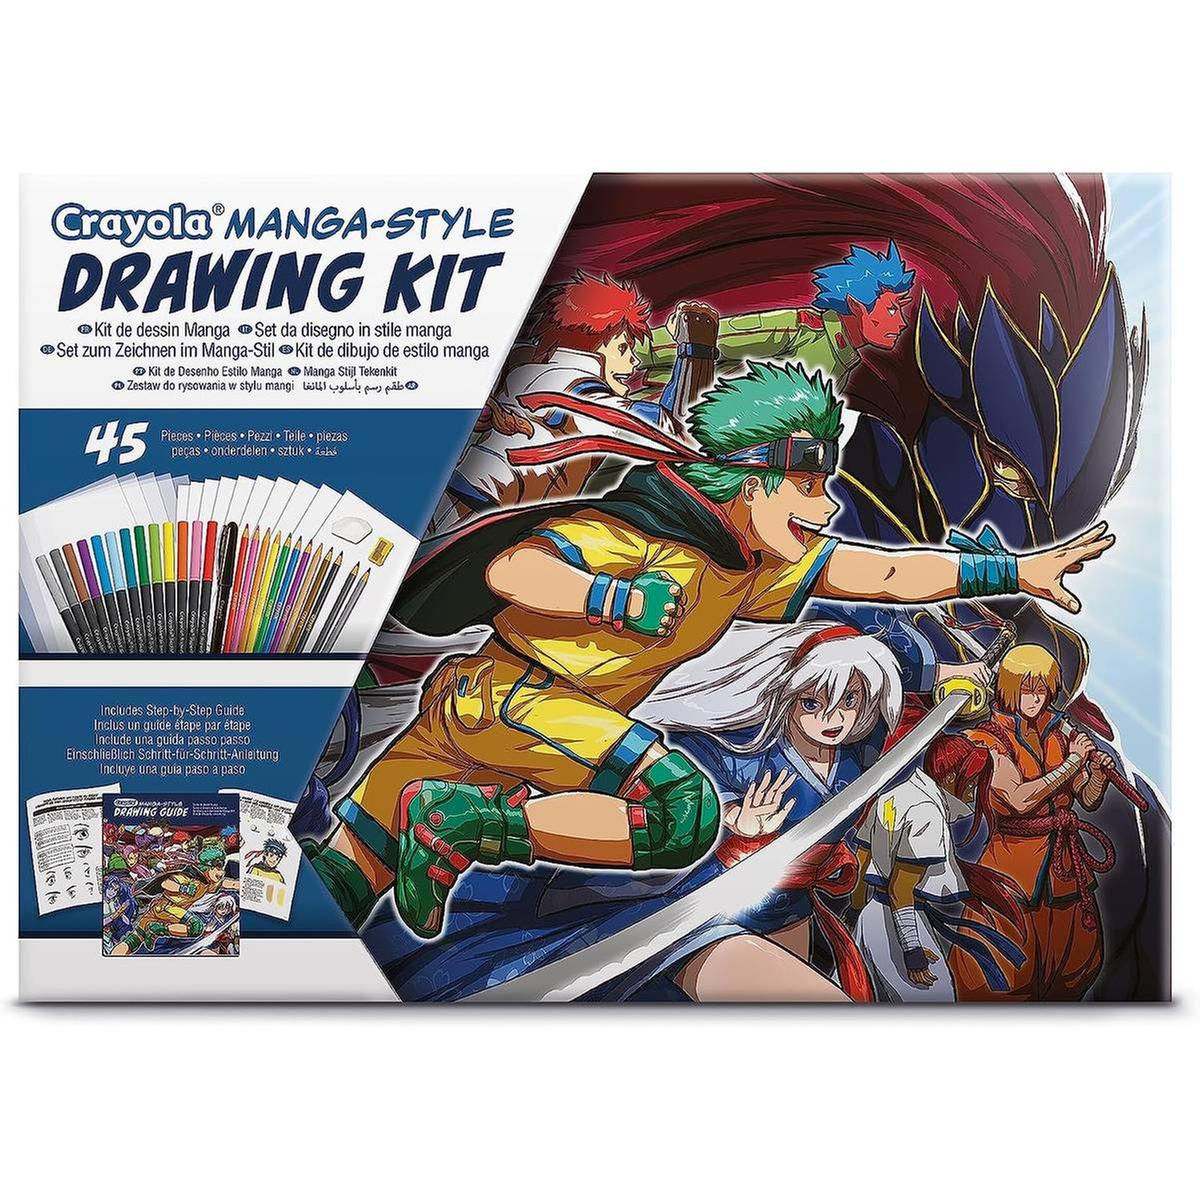 Crayola - Kit de desenho Manga com 45 peças, atividade criativa e presente  ㅤ | Crayola | Loja de brinquedos e videojogos Online Toysrus